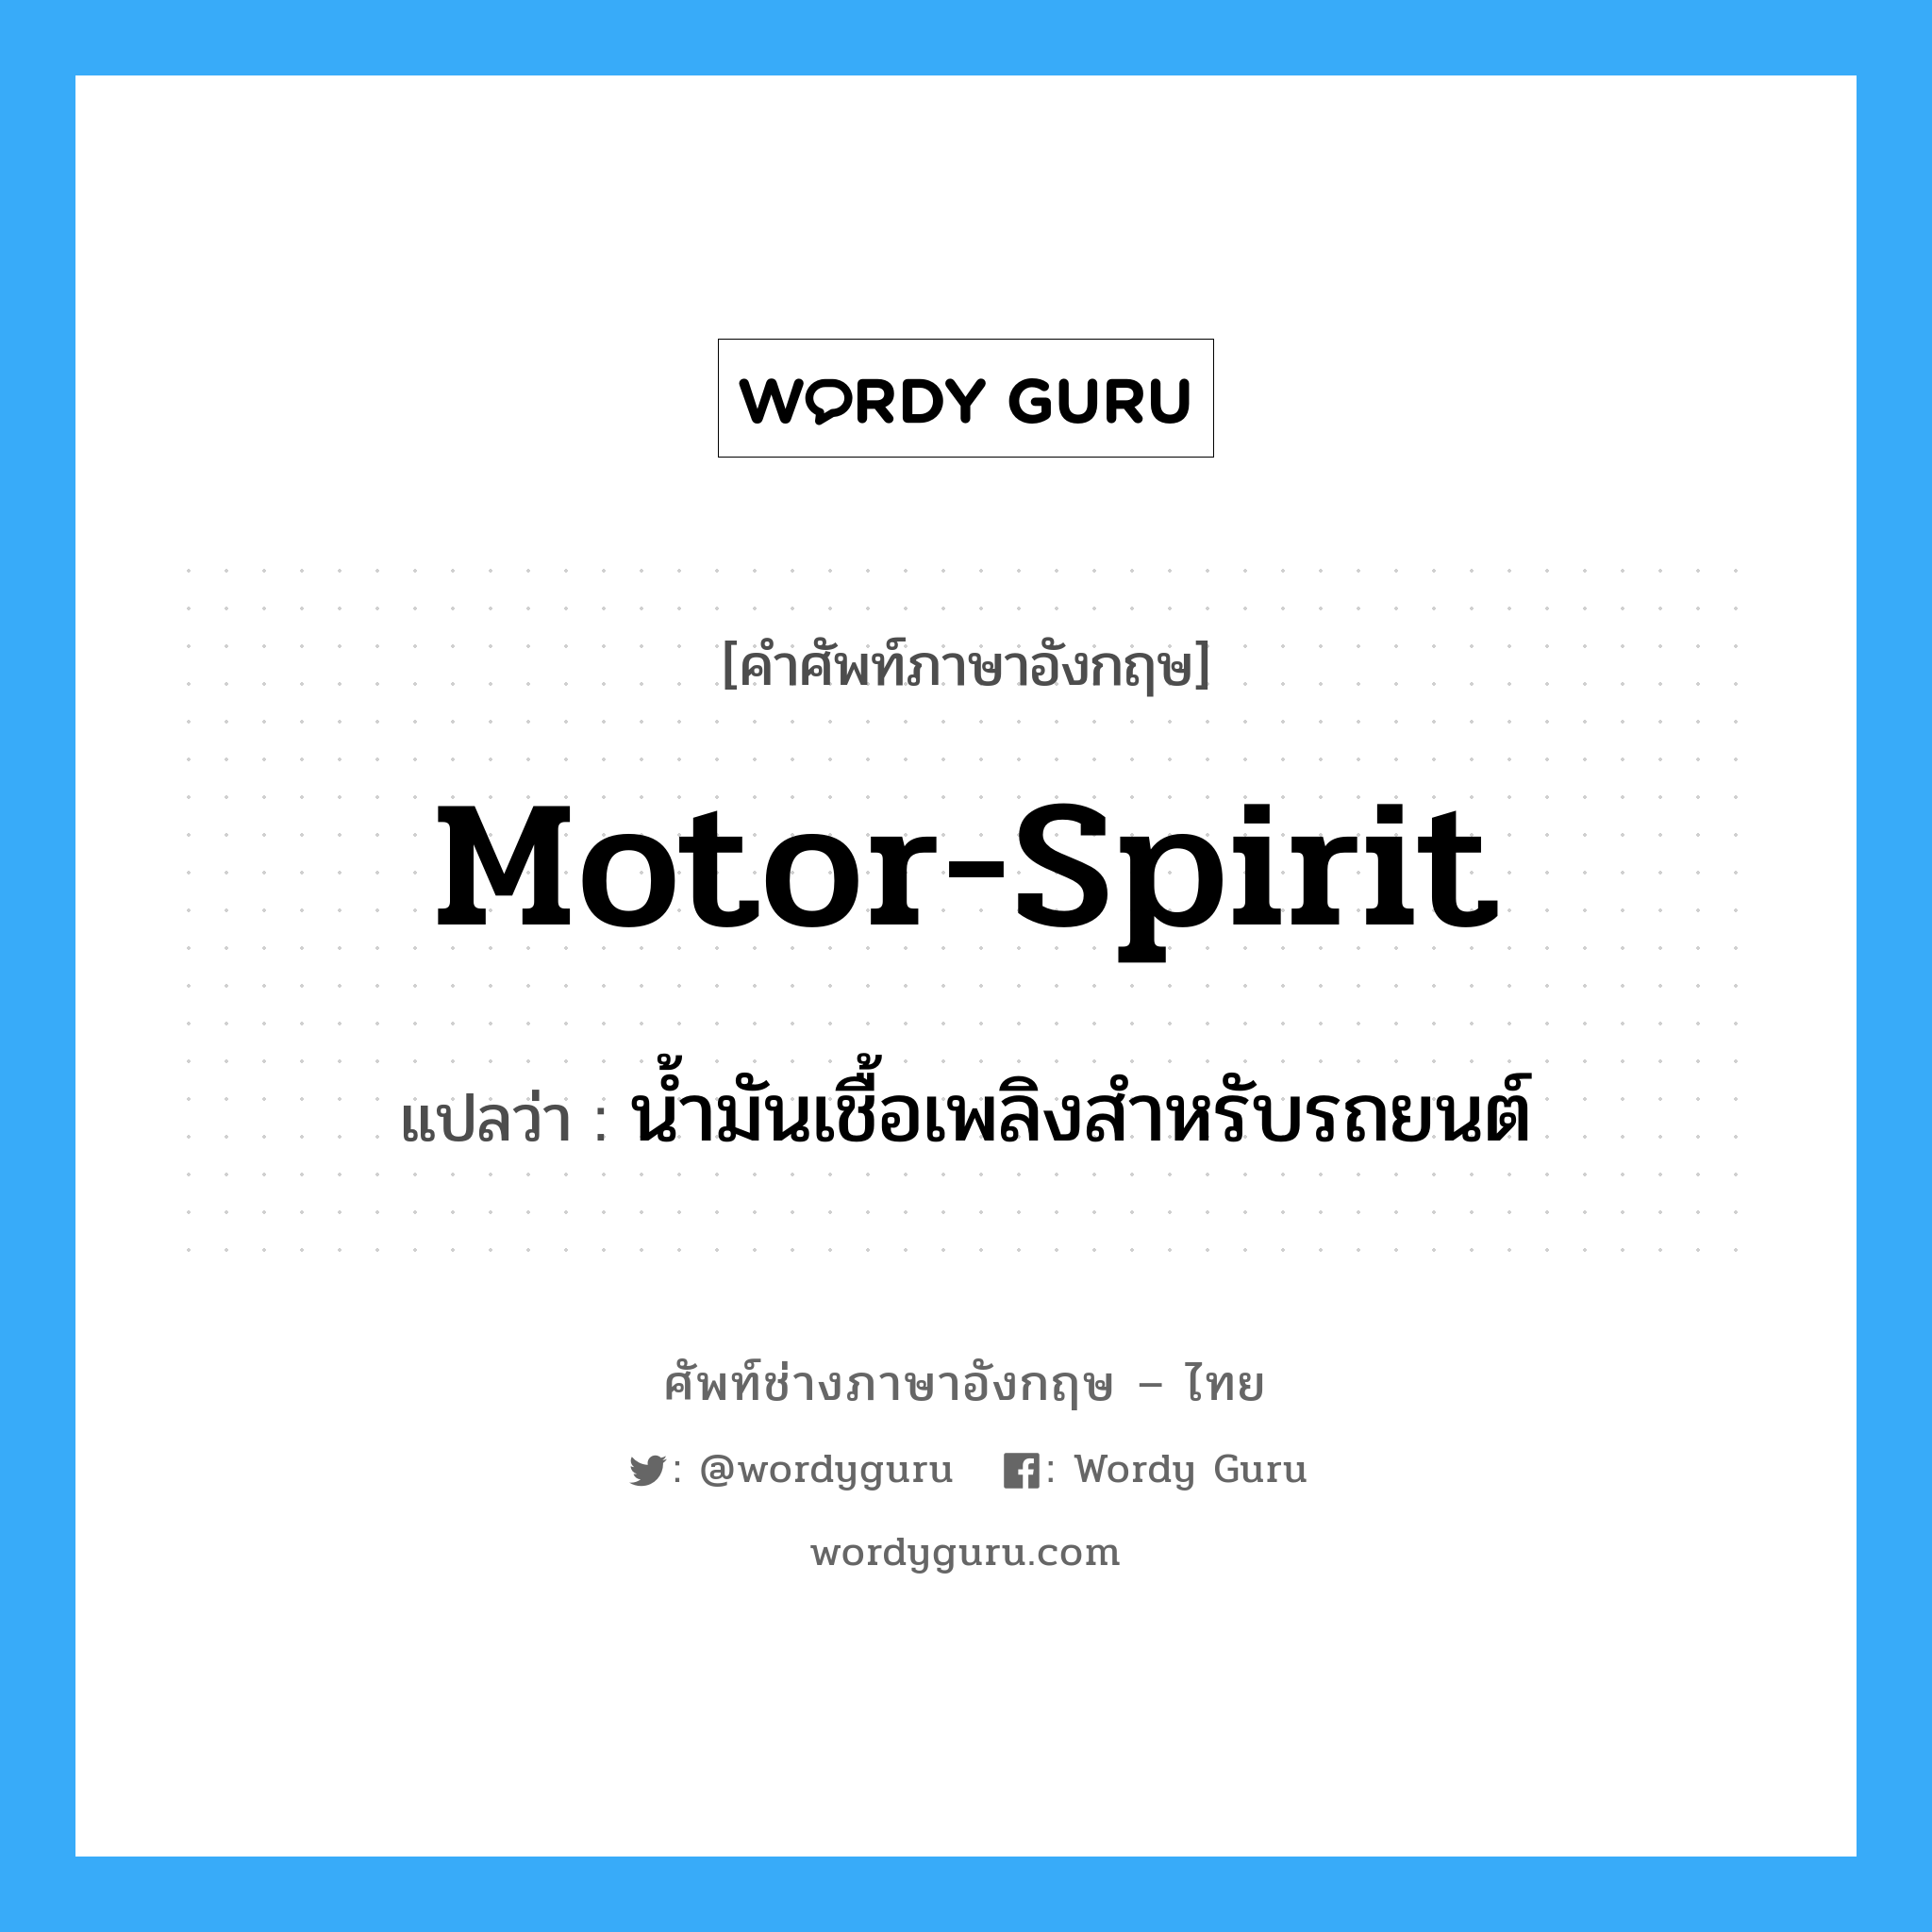 motor-spirit แปลว่า?, คำศัพท์ช่างภาษาอังกฤษ - ไทย motor-spirit คำศัพท์ภาษาอังกฤษ motor-spirit แปลว่า น้ำมันเชื้อเพลิงสำหรับรถยนต์